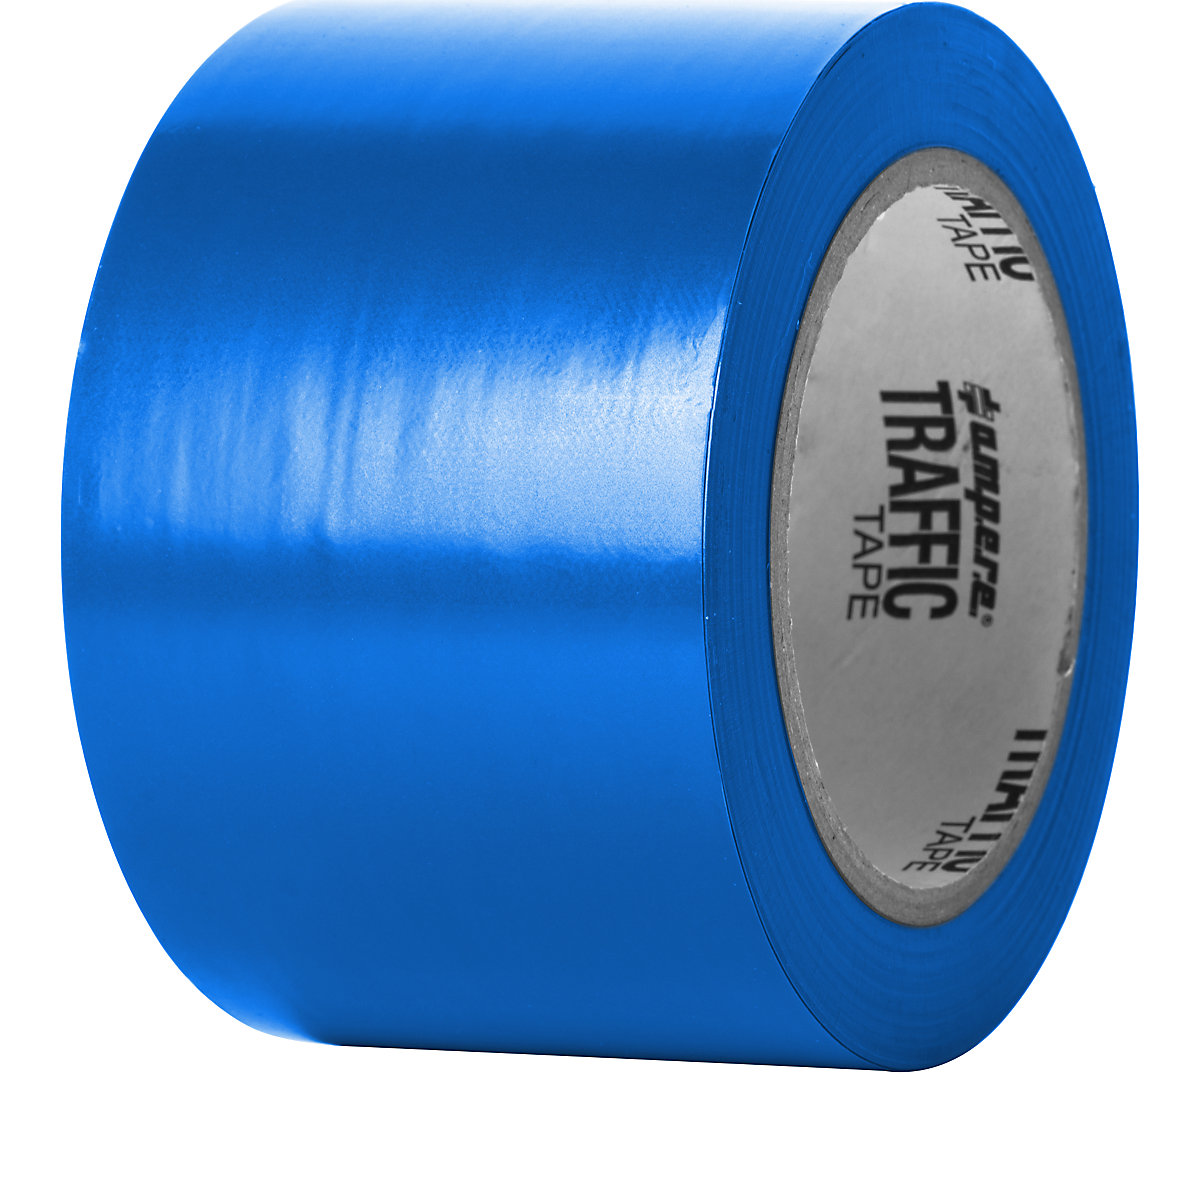 Podlahová označovacia páska – Ampere